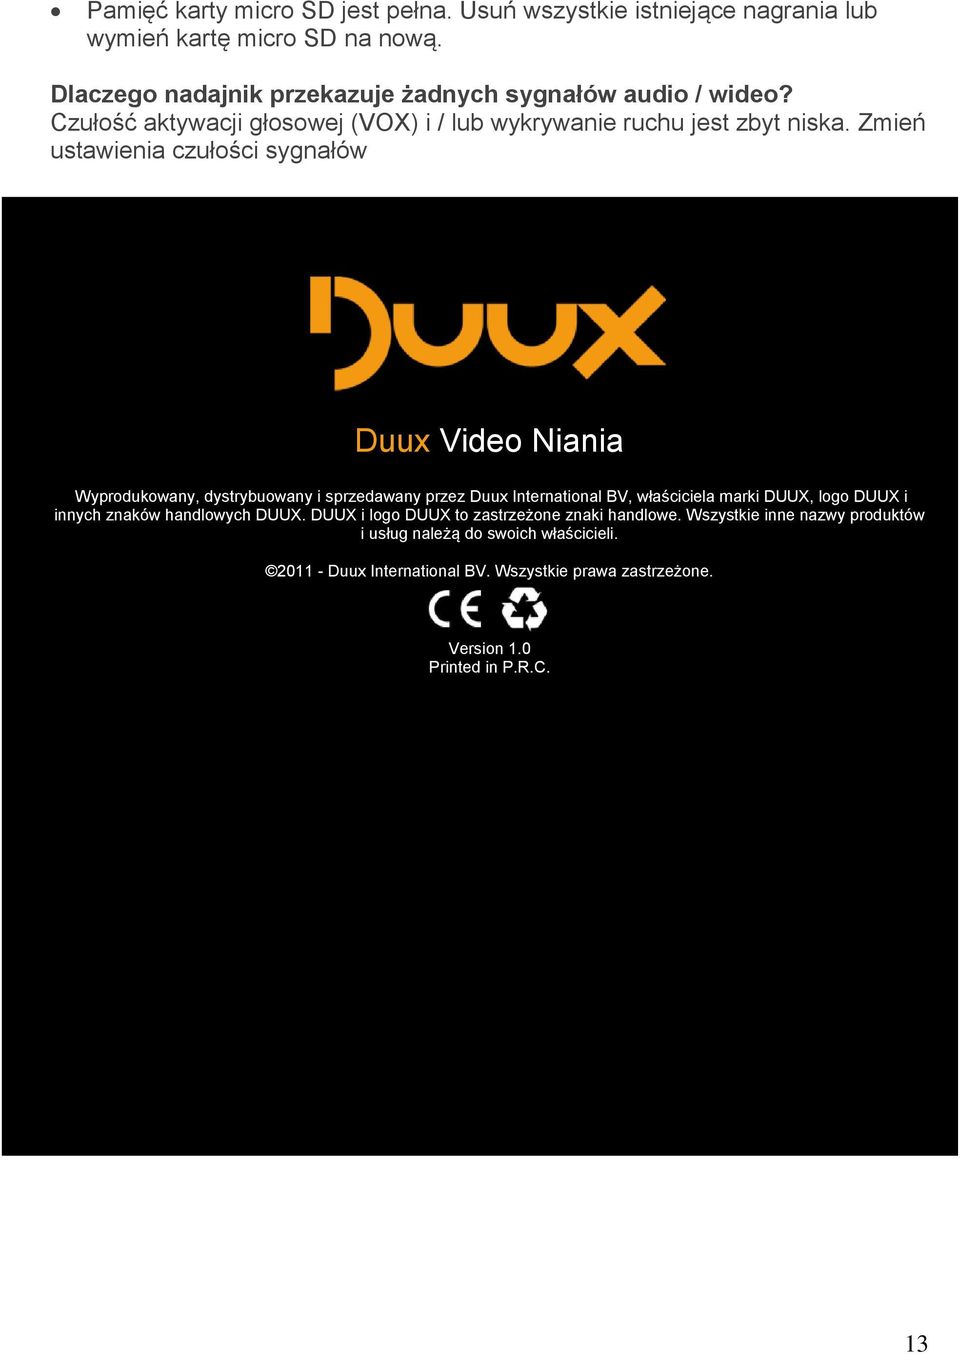 Zmień ustawienia czułości sygnałów Duux Video Niania Wyprodukowany, dystrybuowany i sprzedawany przez Duux International BV, właściciela marki DUUX, logo DUUX